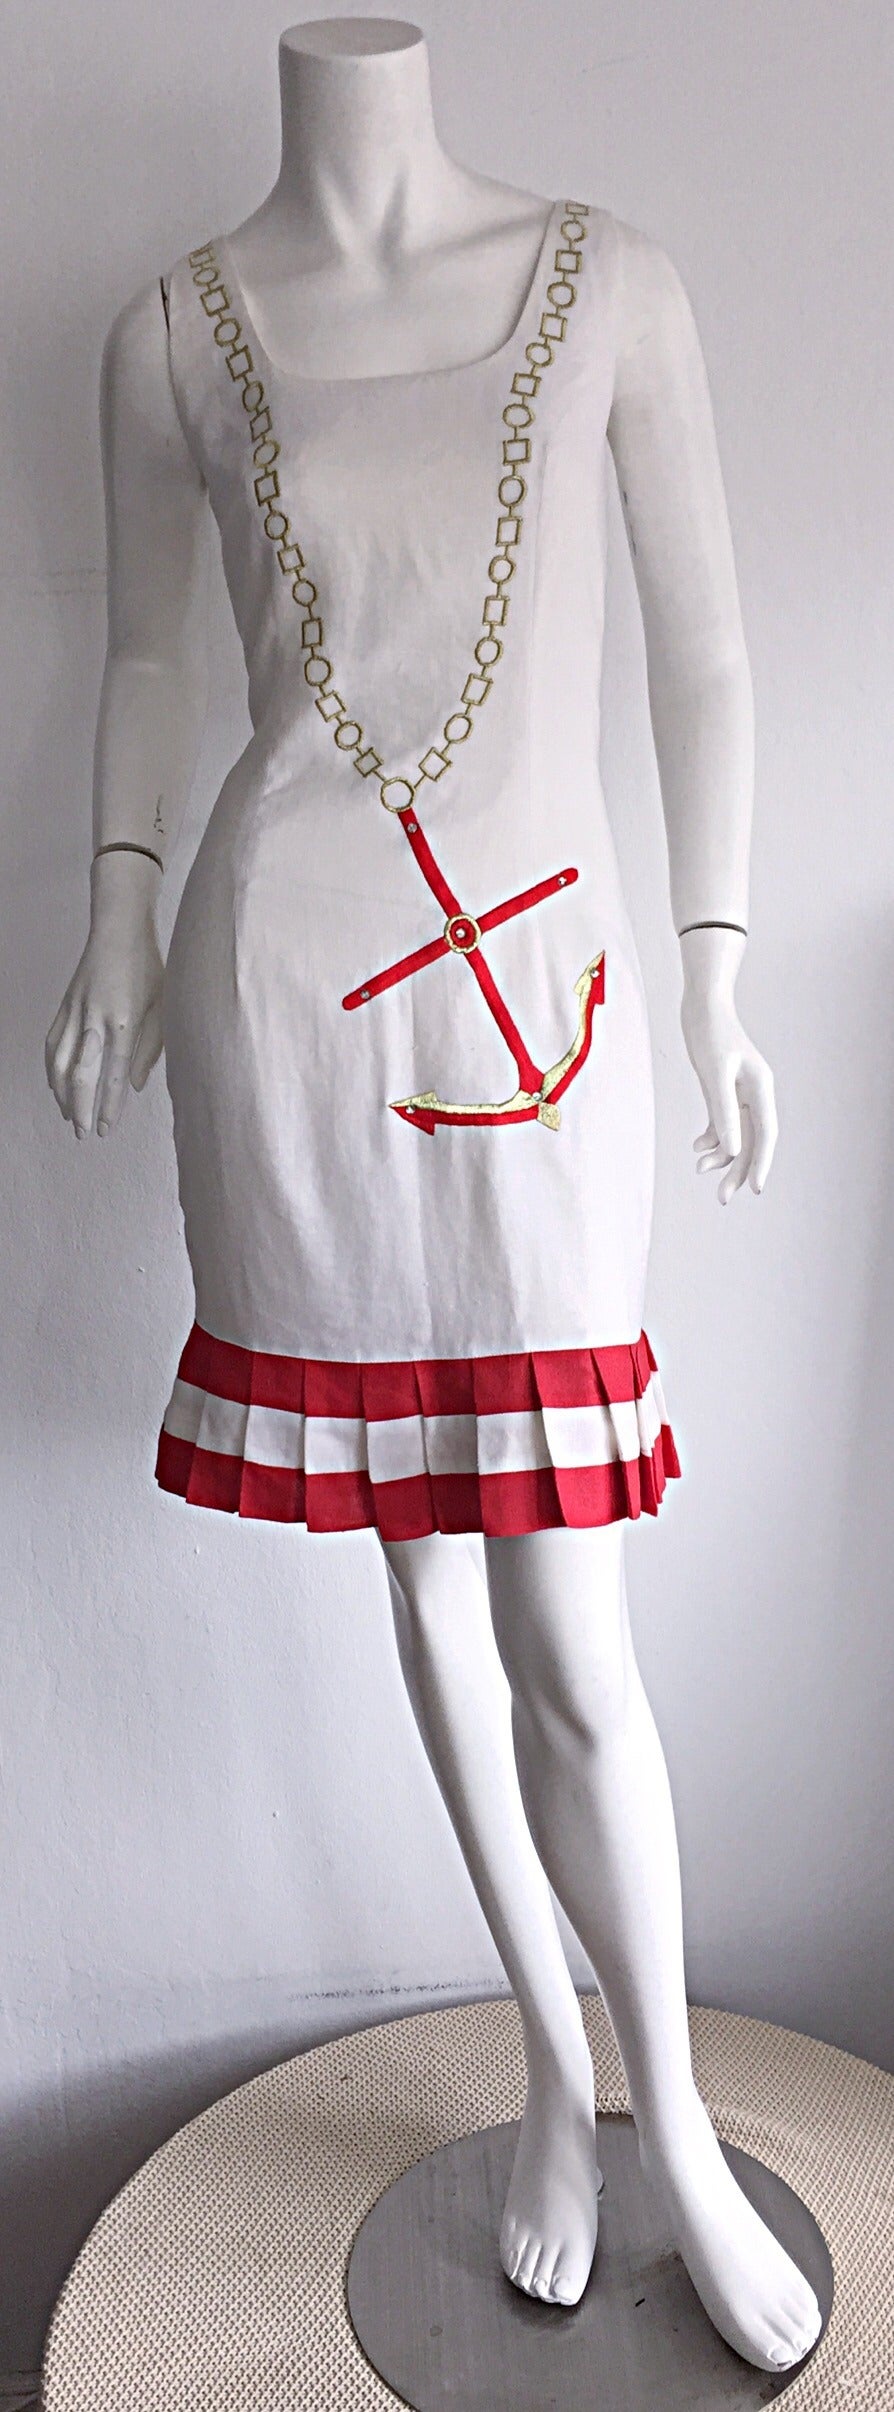 Superbe robe nautique vintage des années 1990 ! Lin fin entièrement doublé, avec du fil de soie doré imprimé pour ressembler à un collier de chaîne, avec une ancre brodée rouge, incrustée de trois strass. Ourlet plissé rouge et blanc. Passe